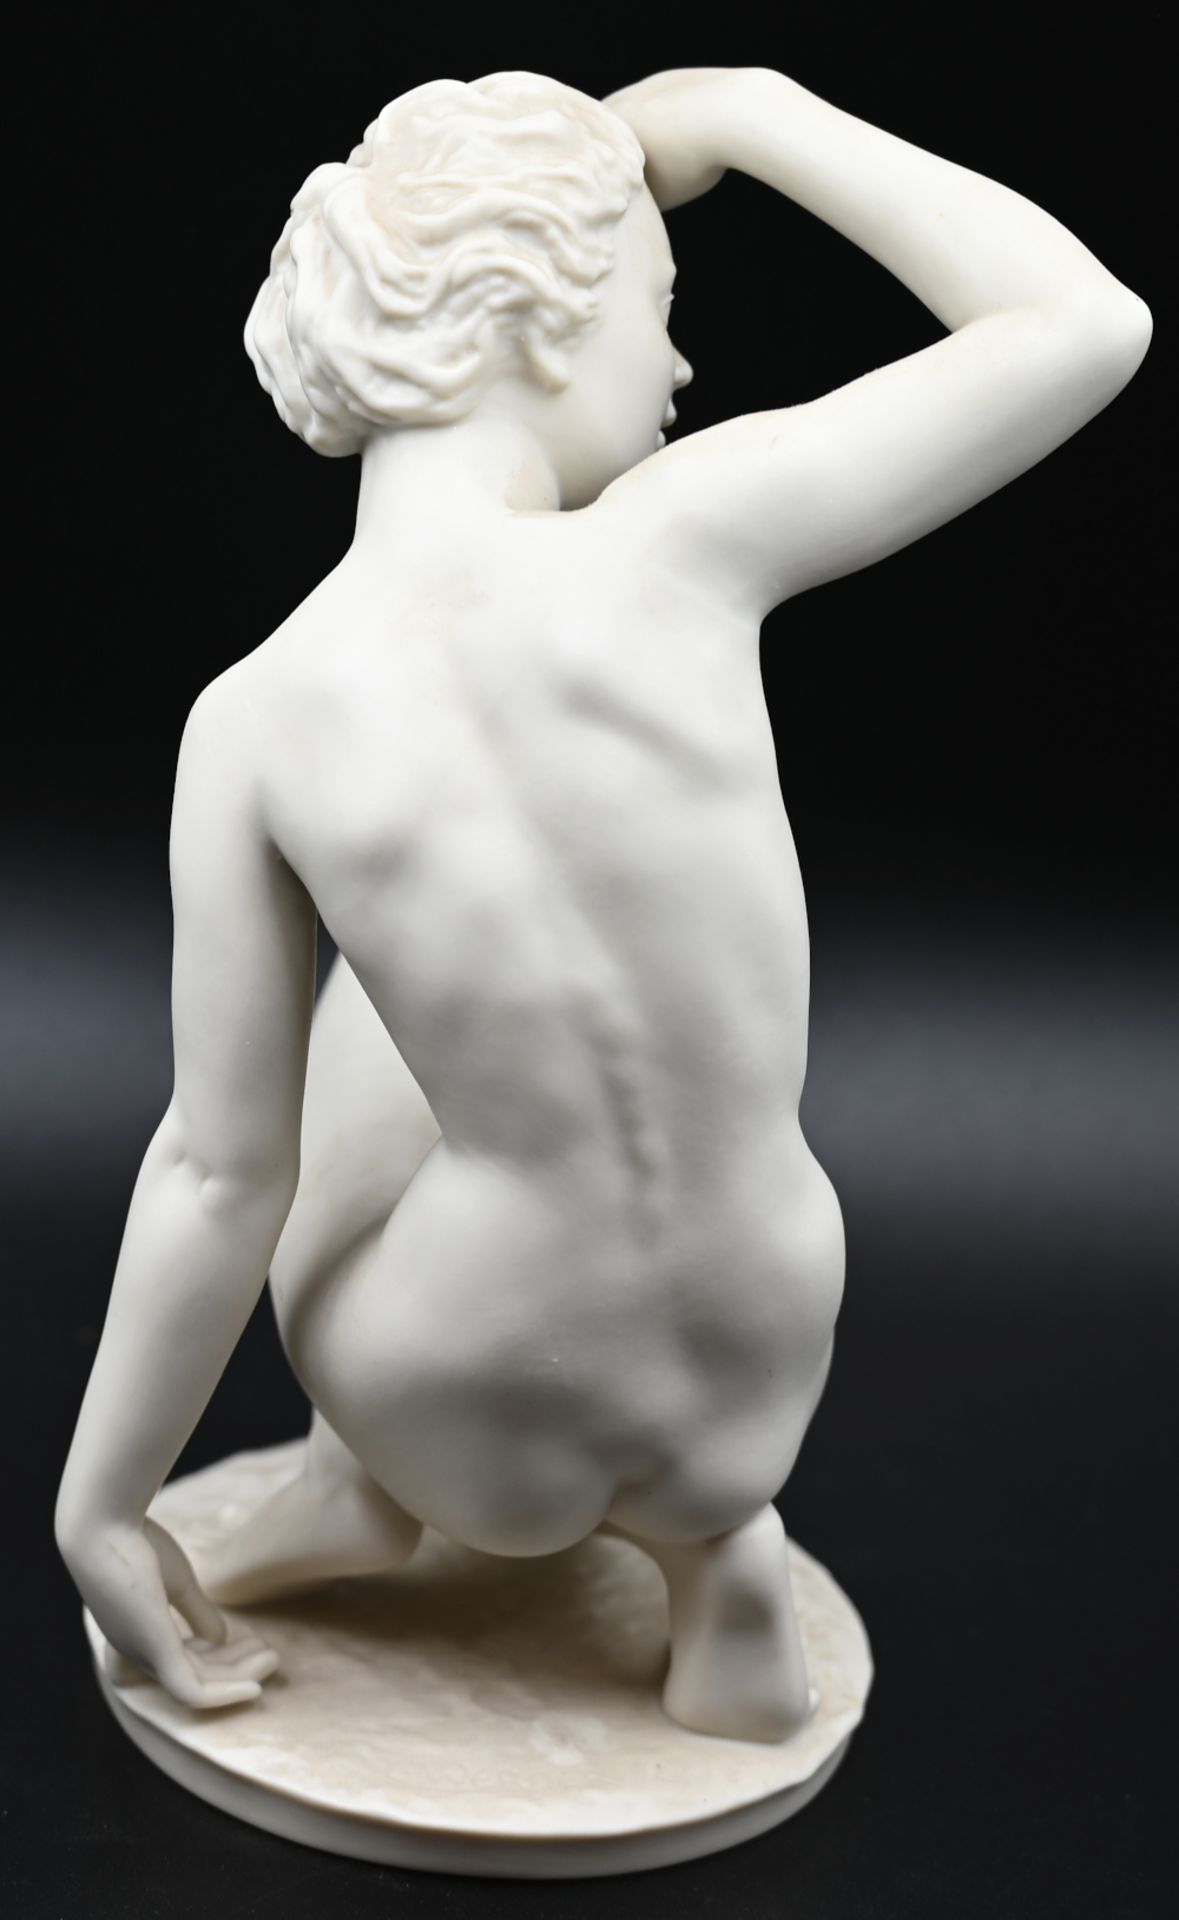 1 Figur Bisquitporzellan HUTSCHENREUTHER "Die Schauende", Entwurf Carl WERNER - Bild 4 aus 6